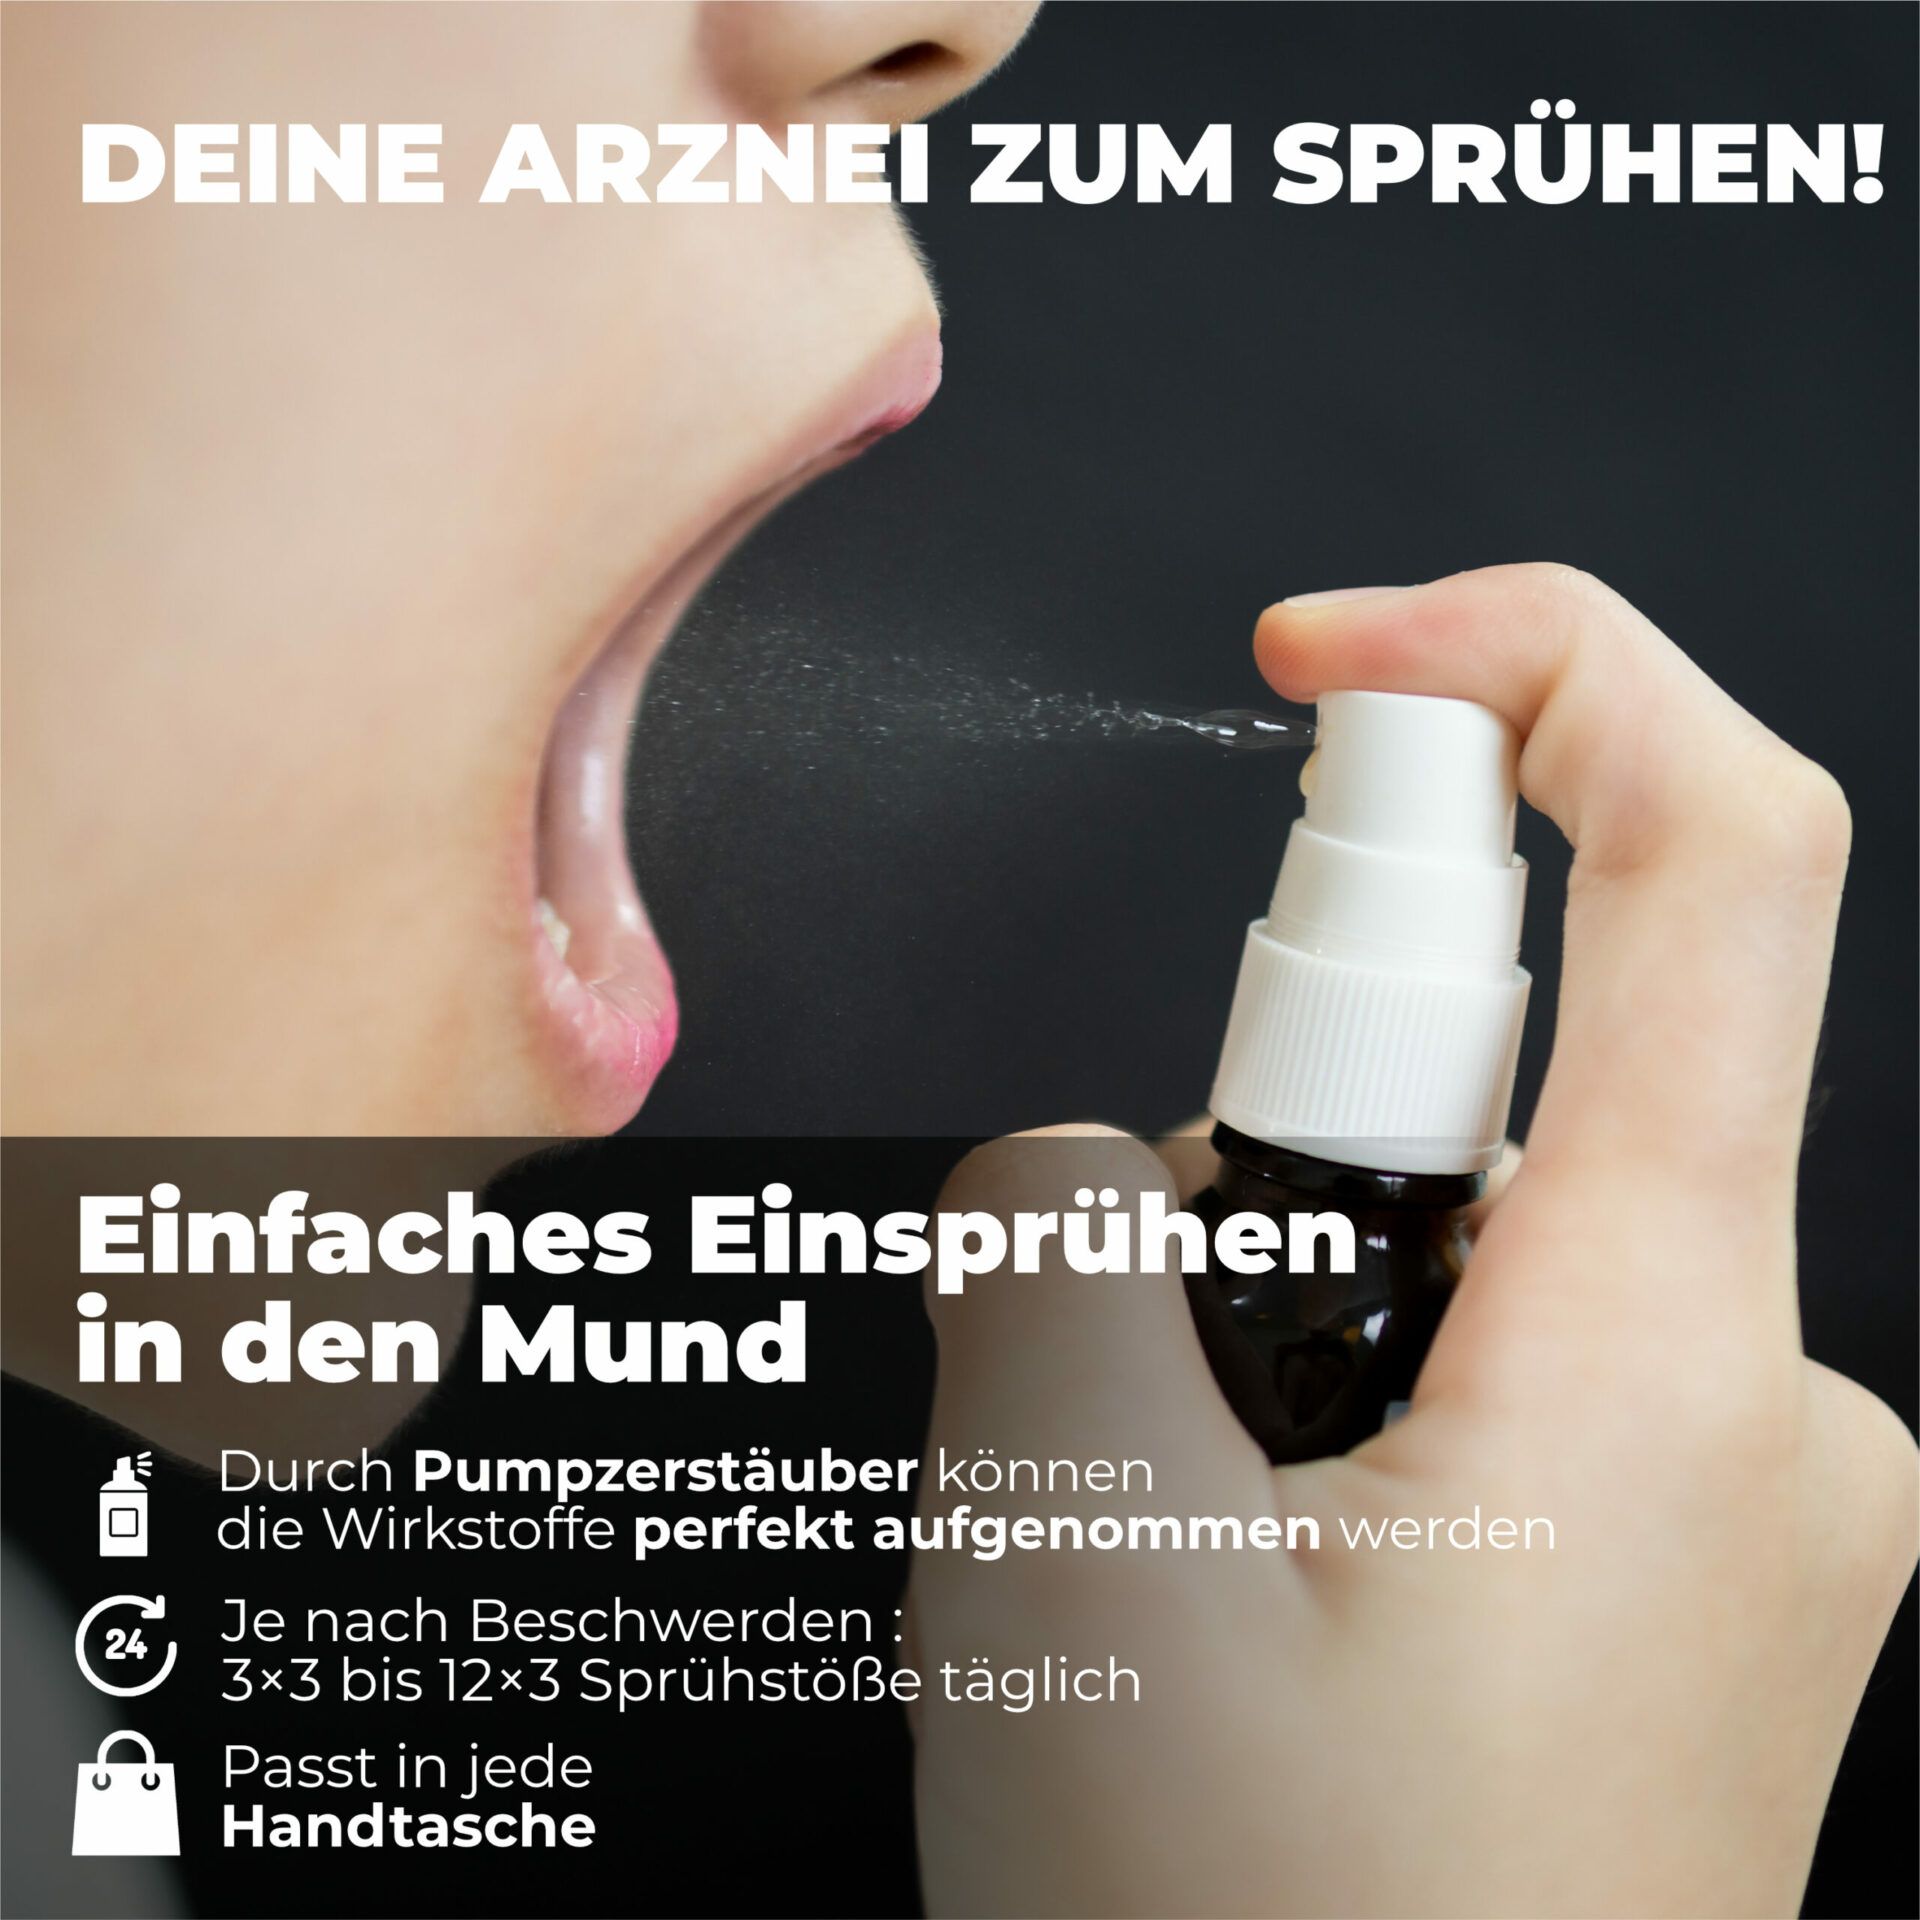 Hübner Silicea Balsam 200 ml - SHOP APOTHEKE